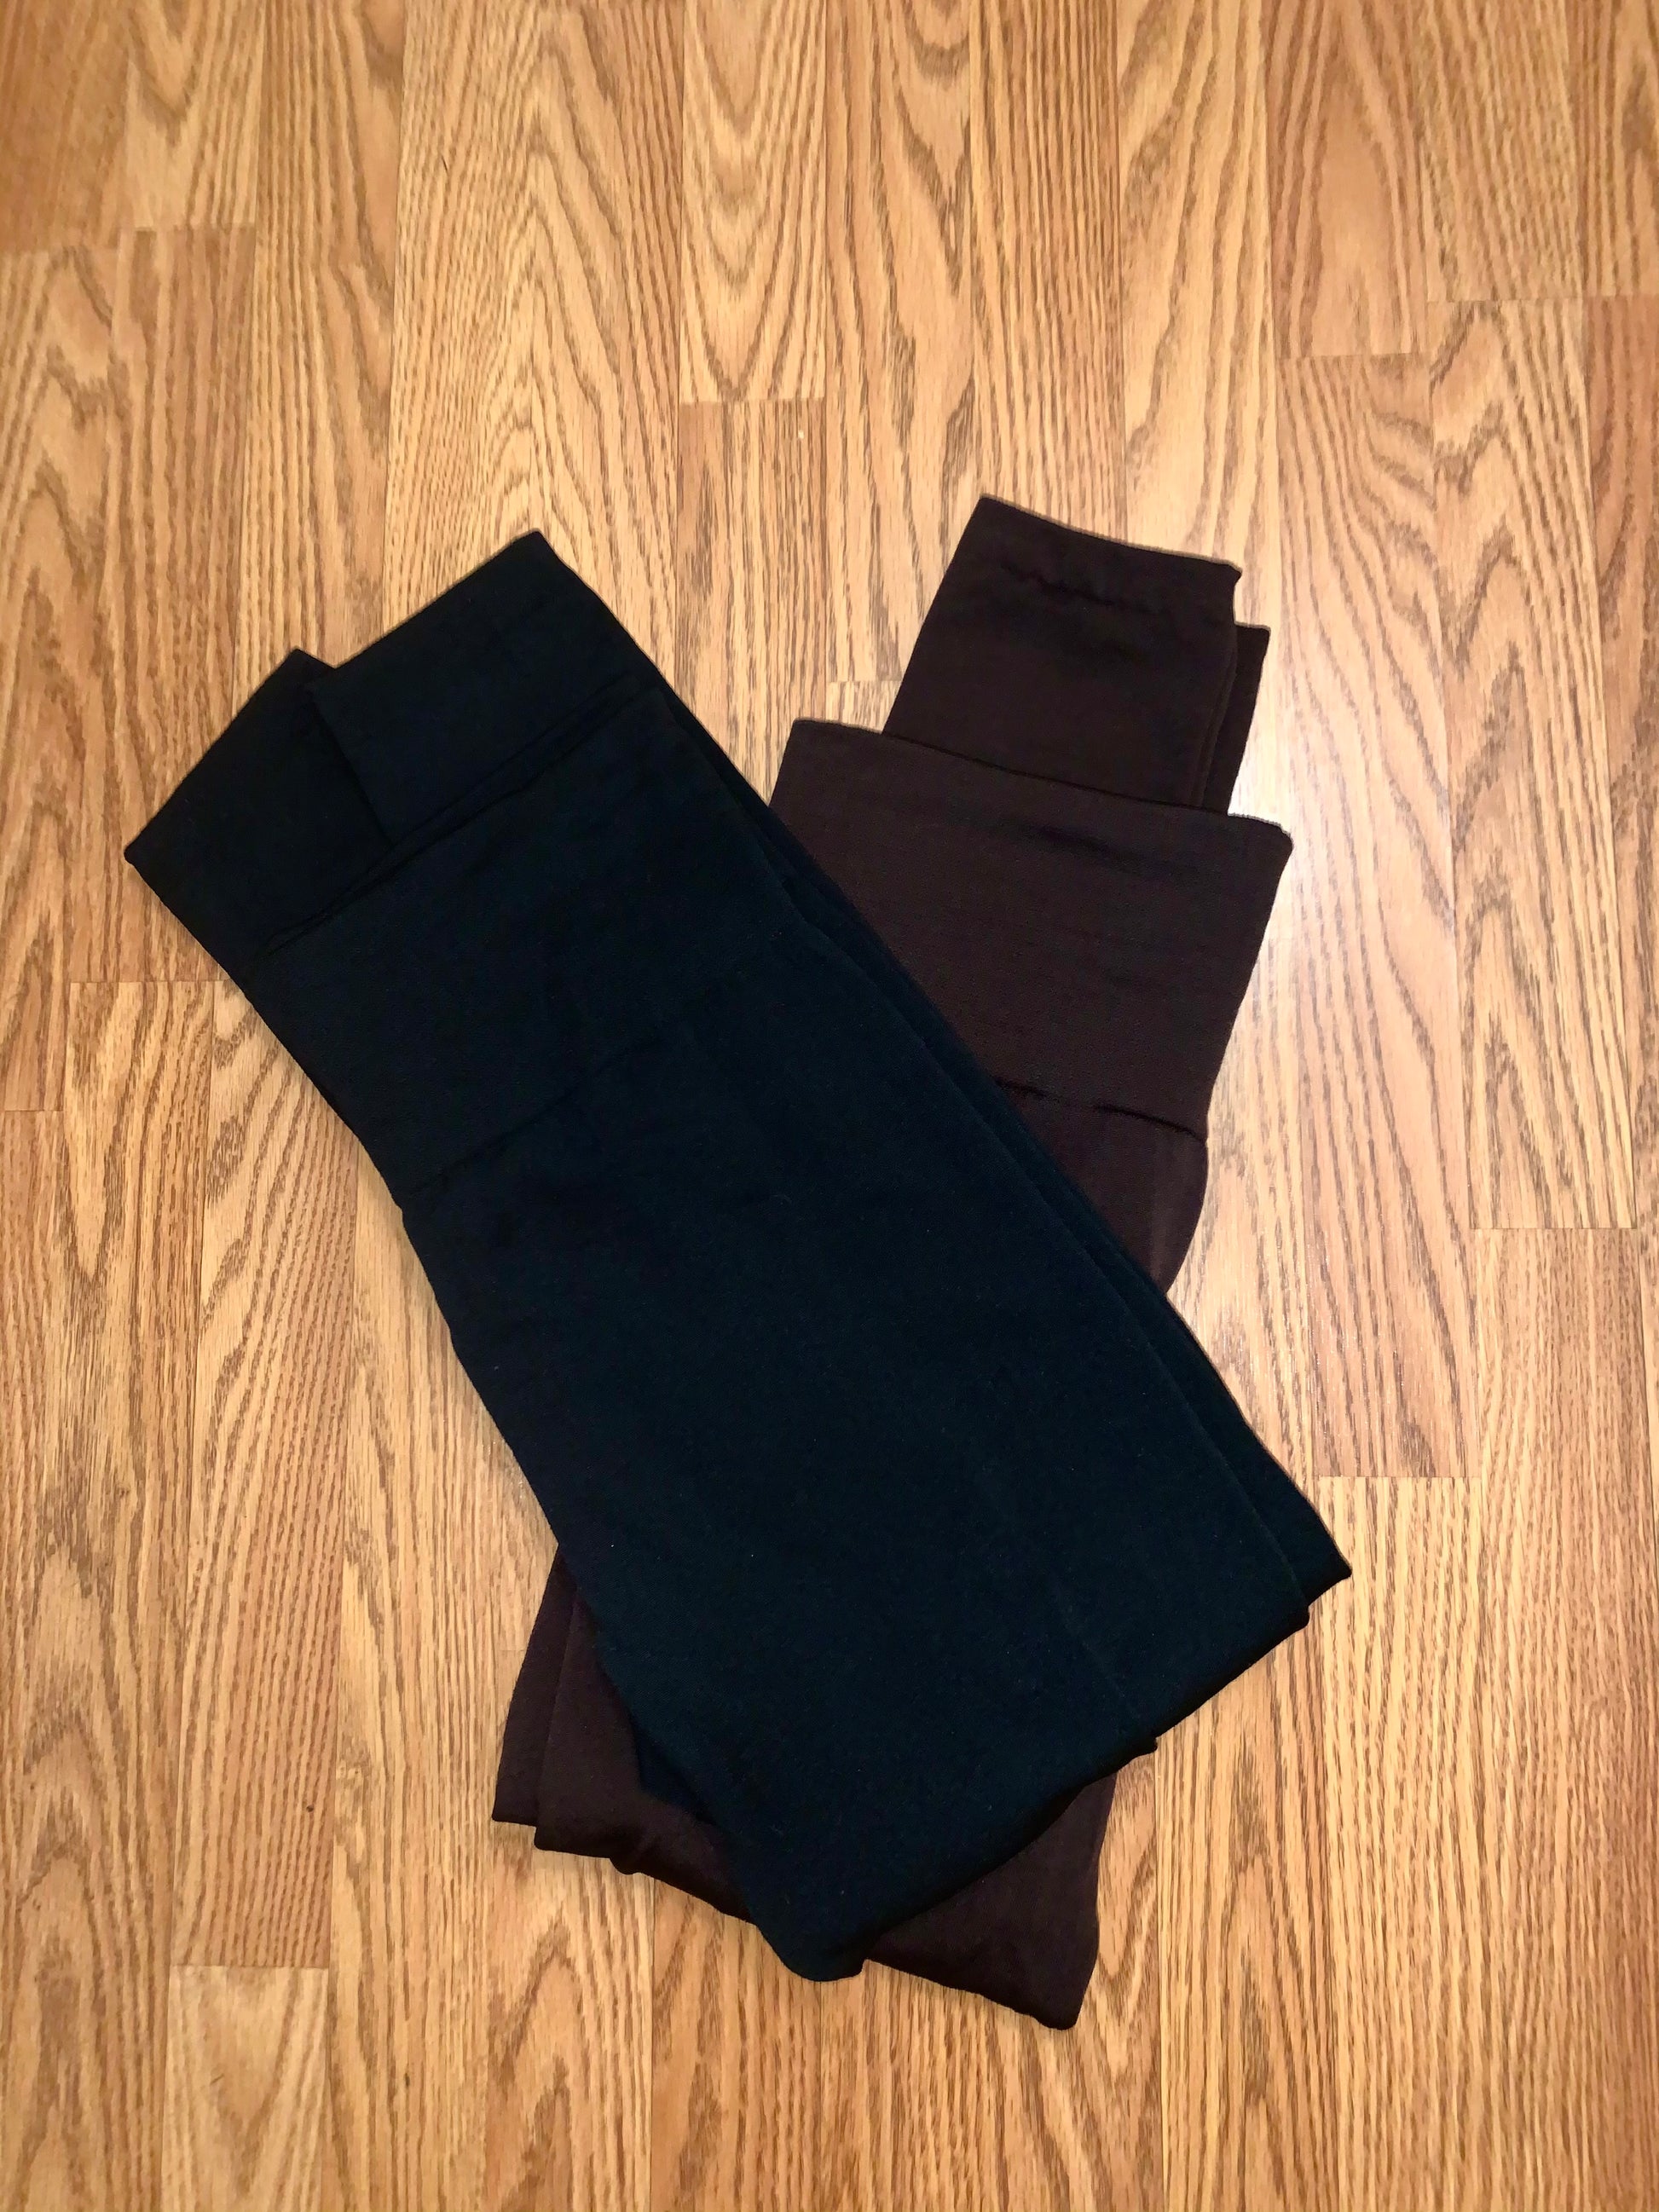 LuLaRoe, Pants & Jumpsuits, New Lularoe Leggings Solid Black